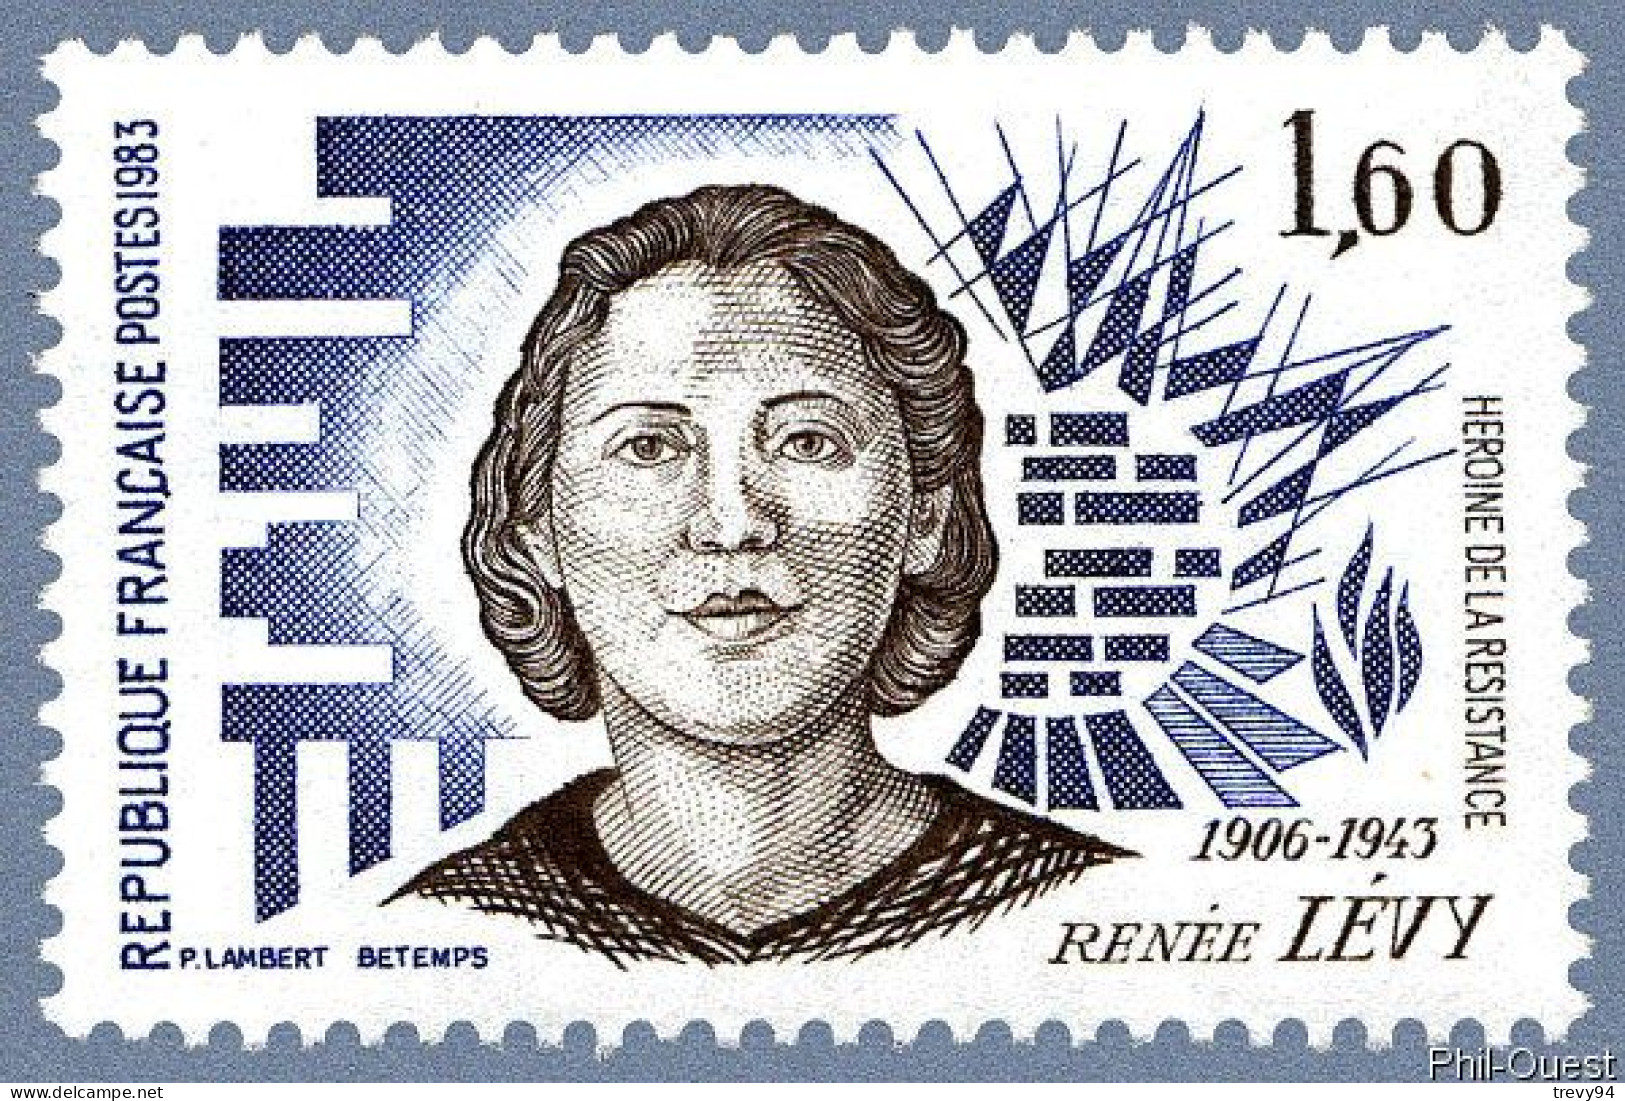 Timbre De 1983 - Héroïnes De La Résistance Renée Levy 1906-1943 - Yvert & Tellier N° 2293 - Neufs